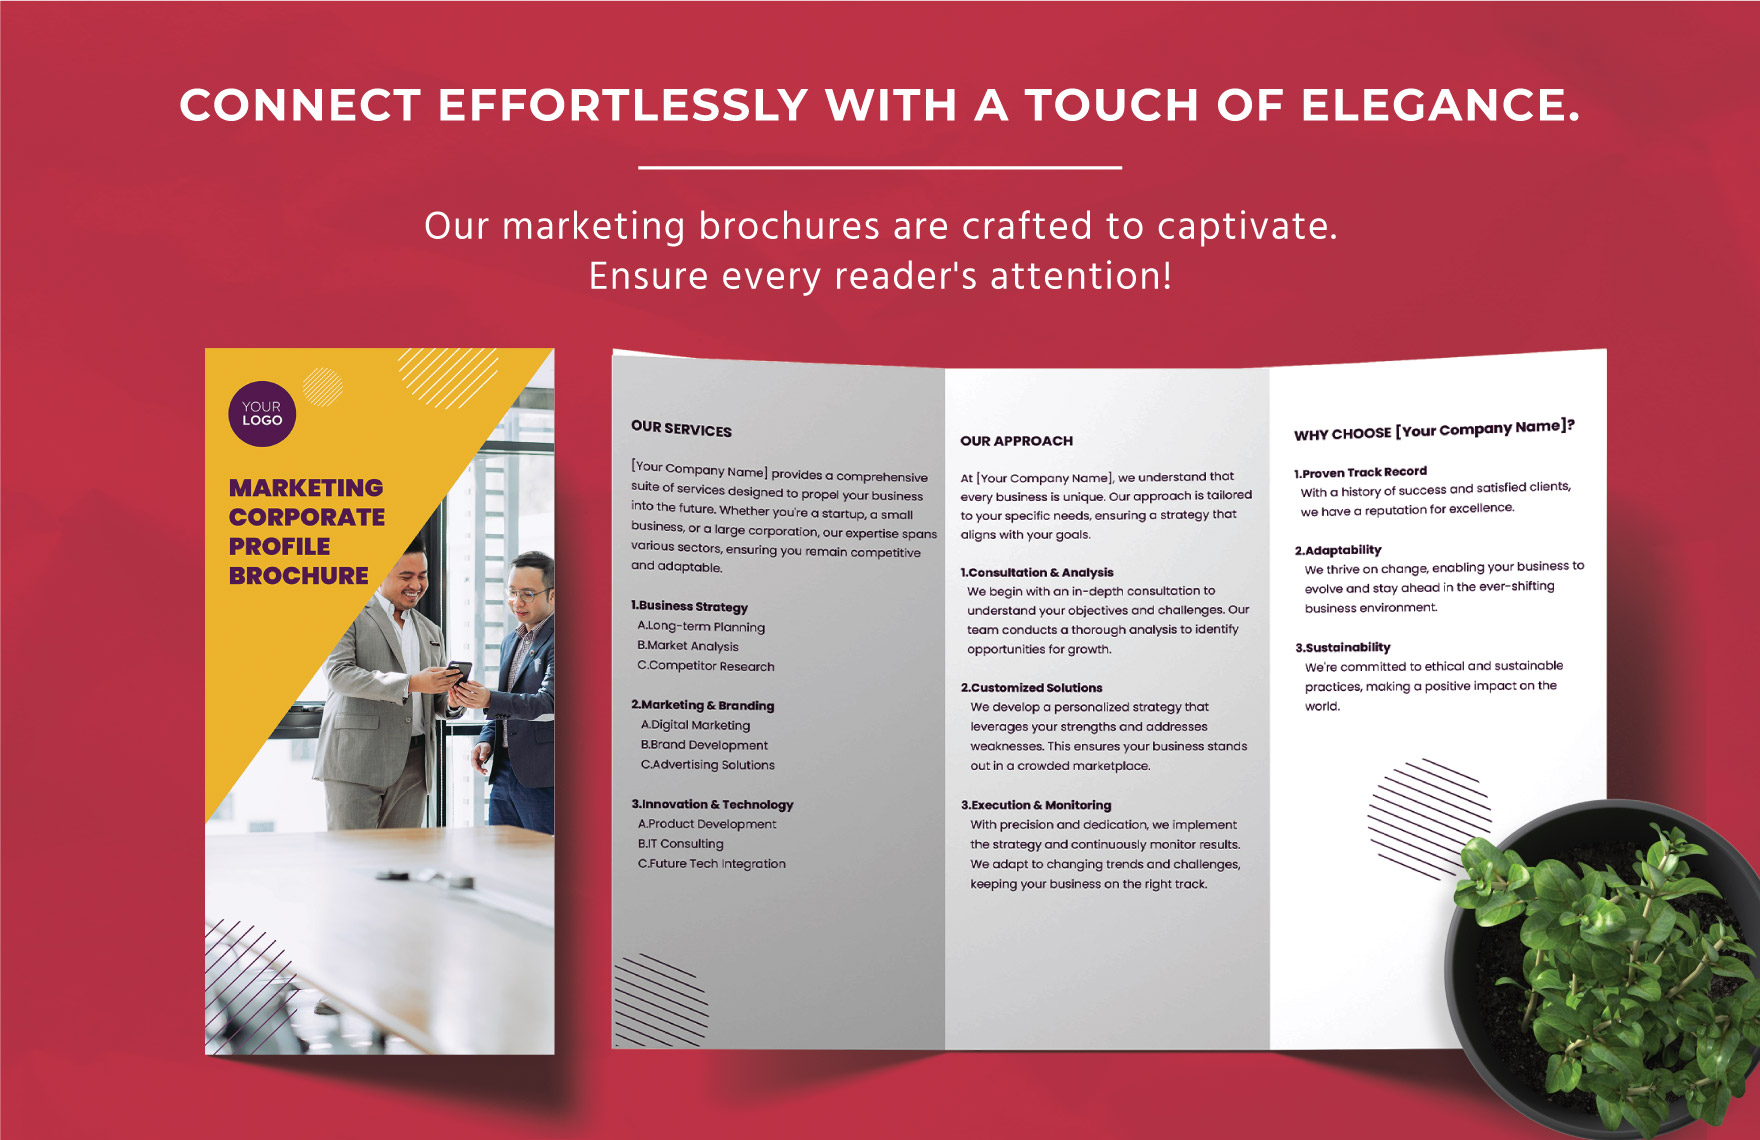 Marketing Corporate Profile Brochure Template